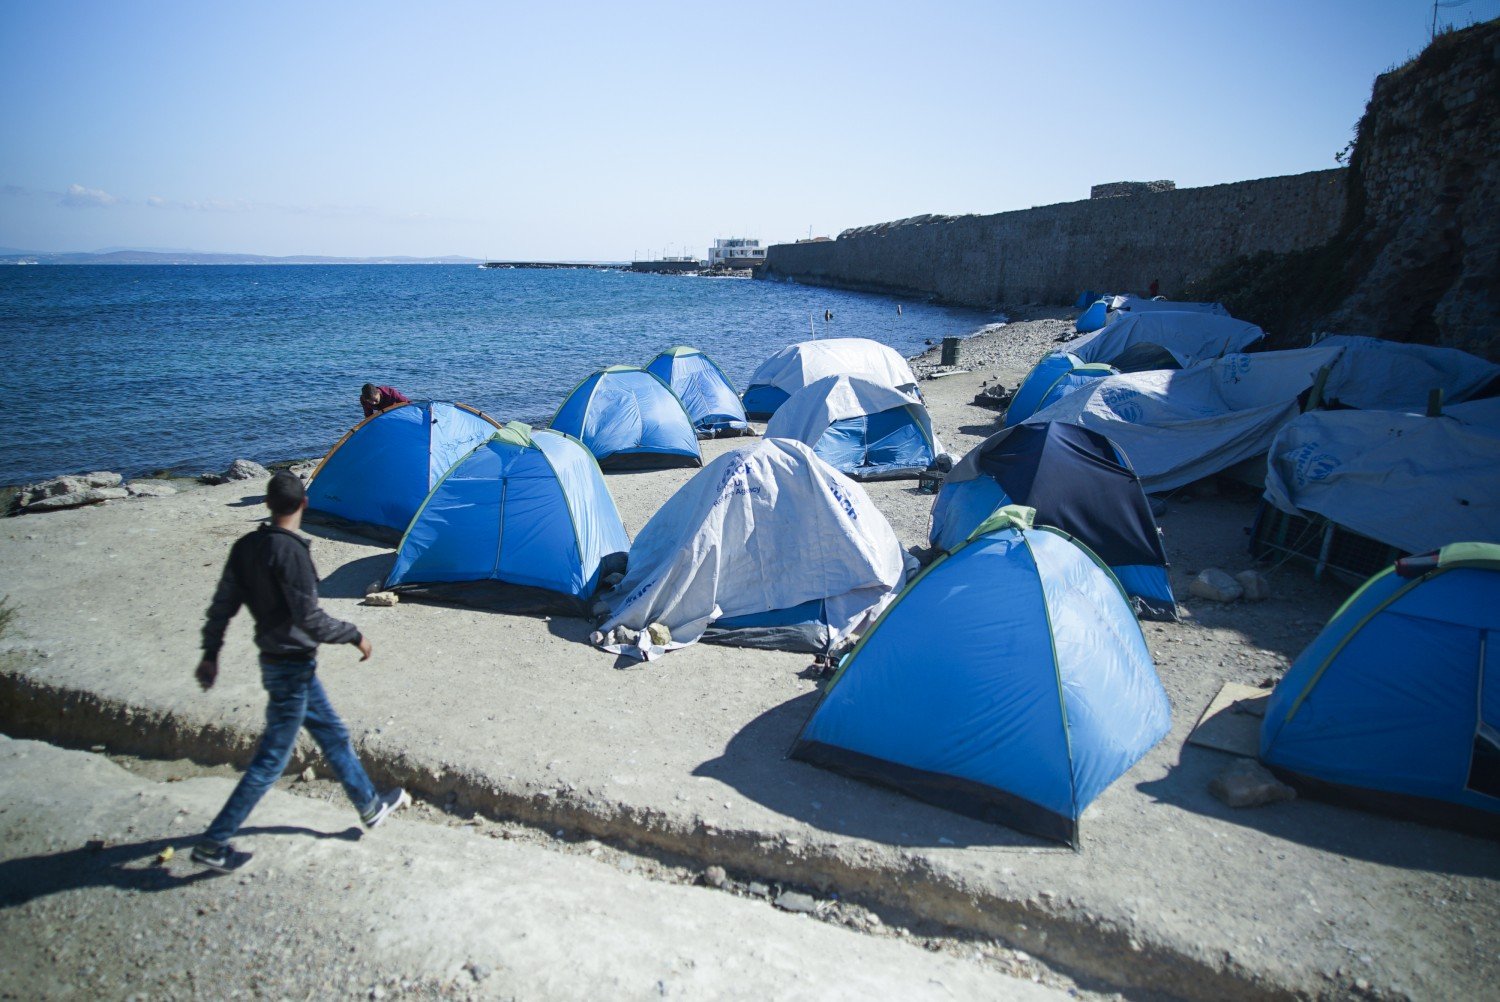 Wioska namiotów na wyspie Chios, Grecja, 2016